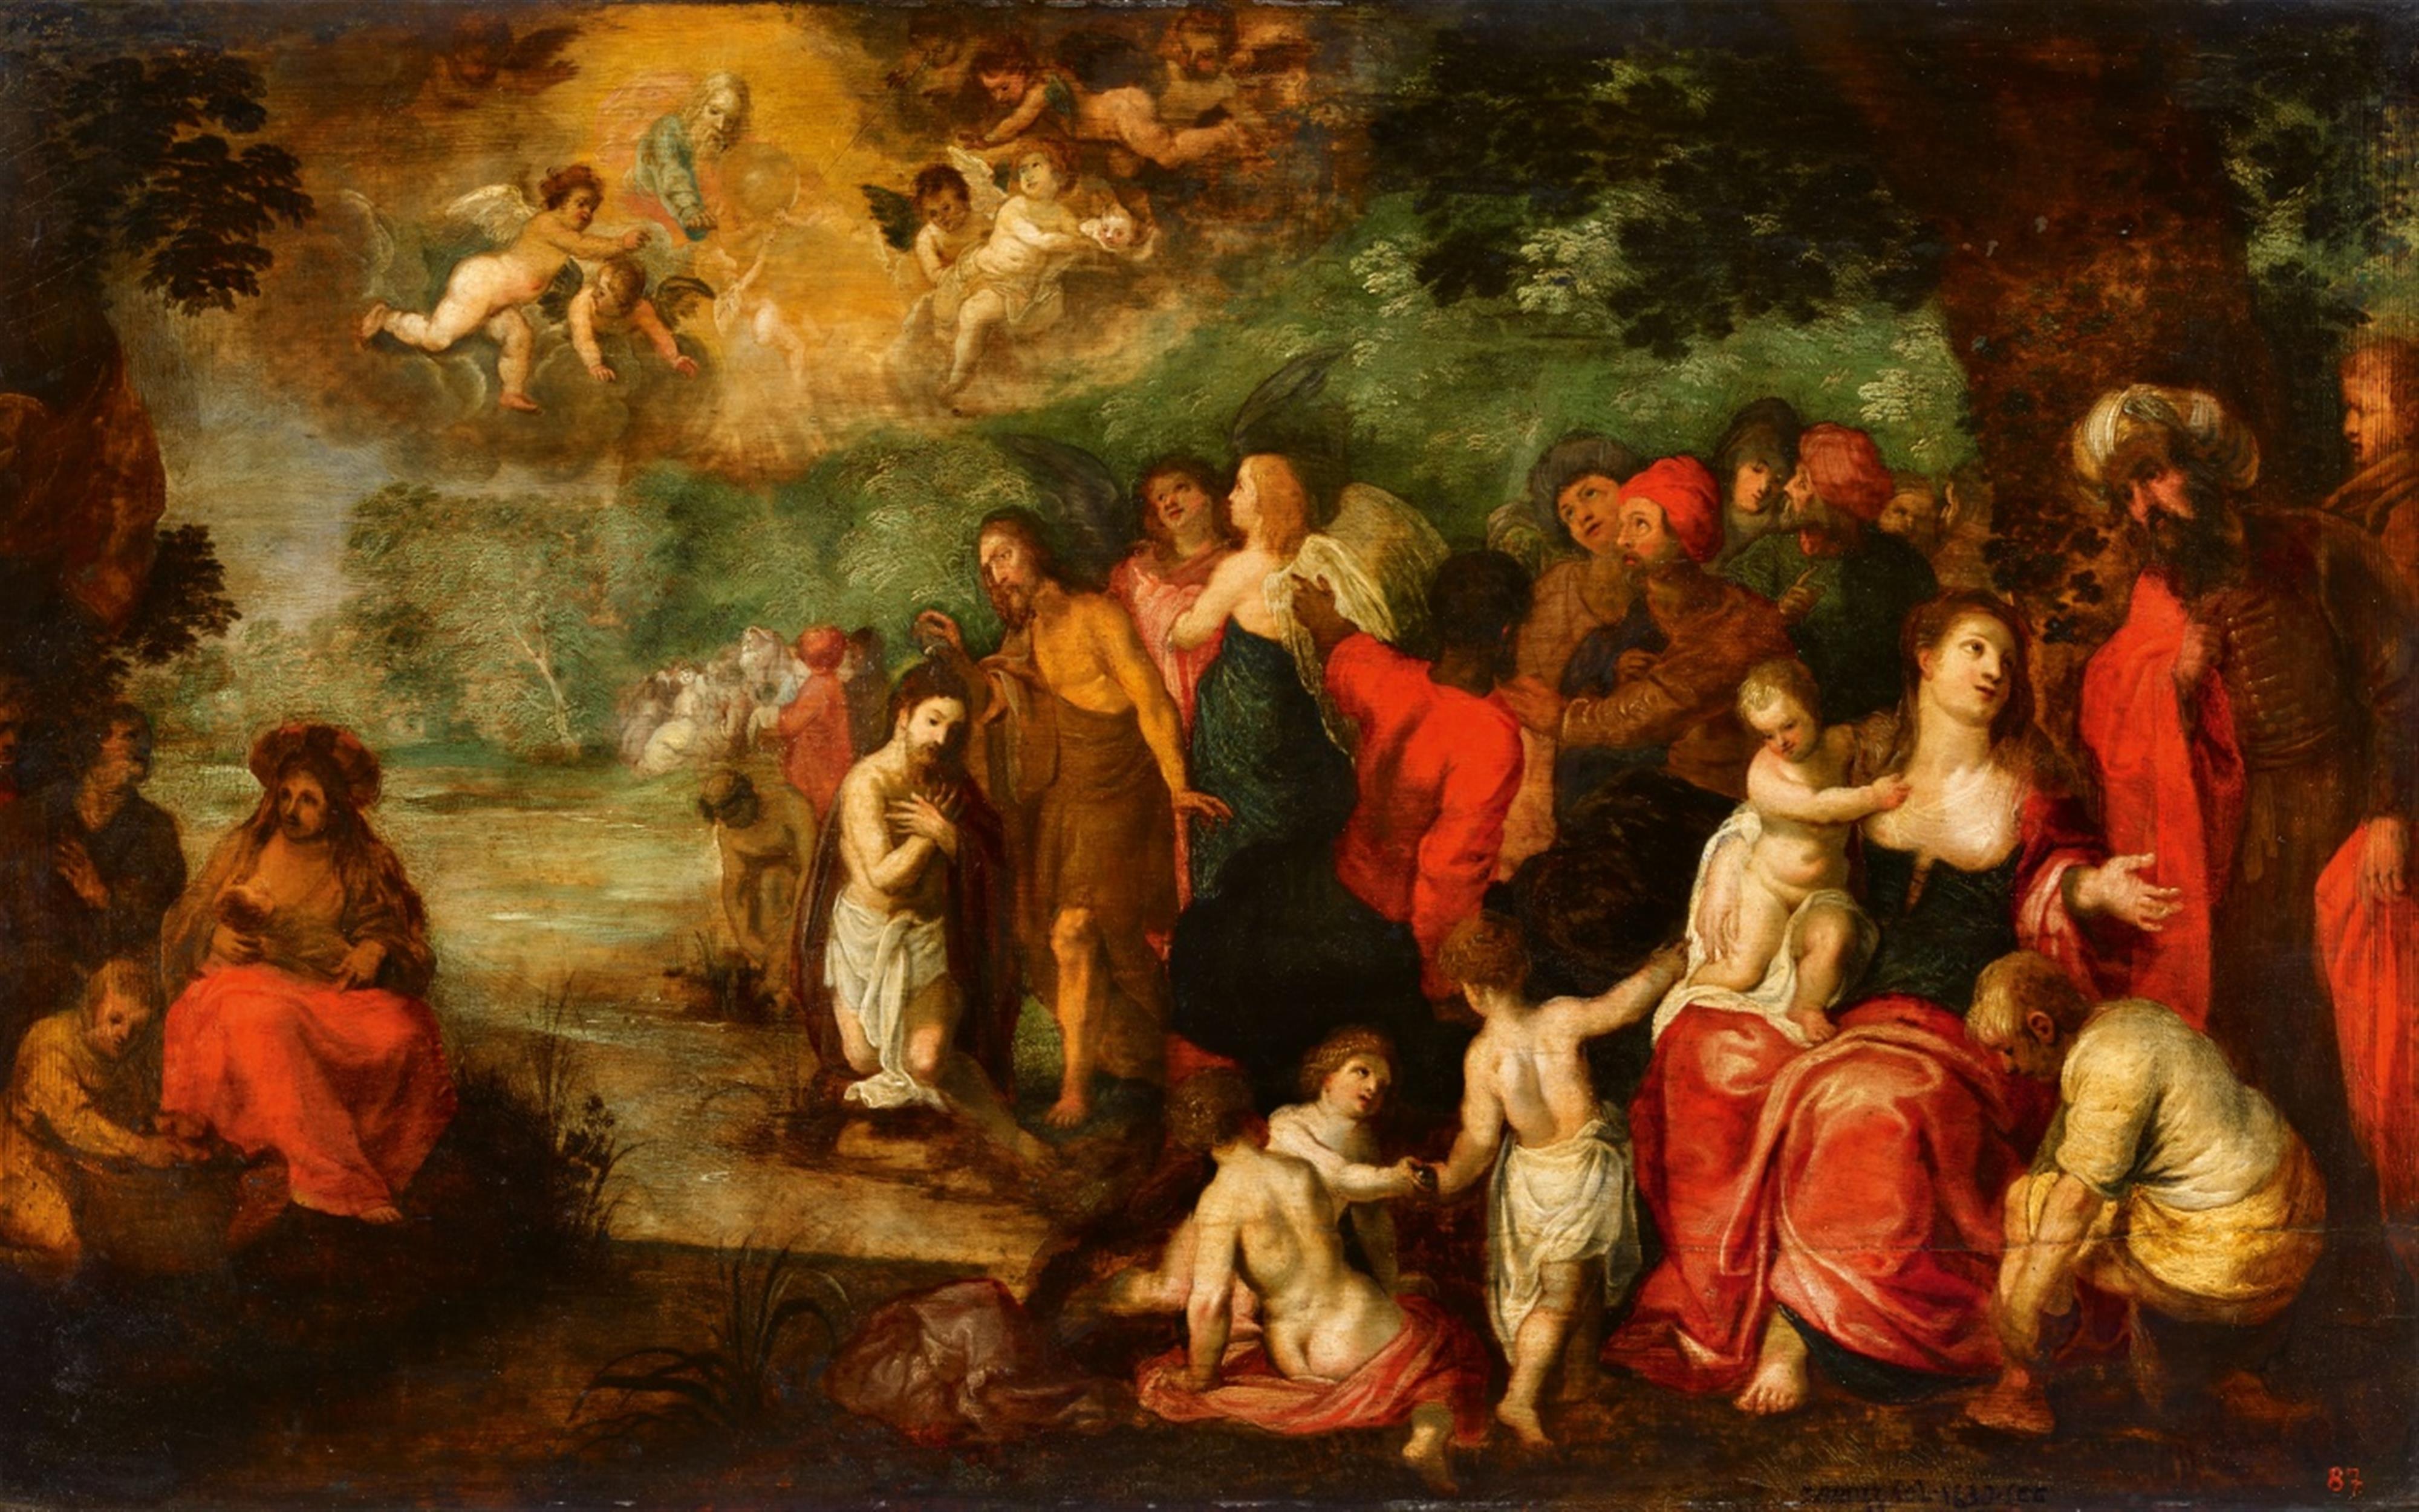 Jan Brueghel the Younger, studio of
Hendrick van Balen - The Baptism of Christ - image-1